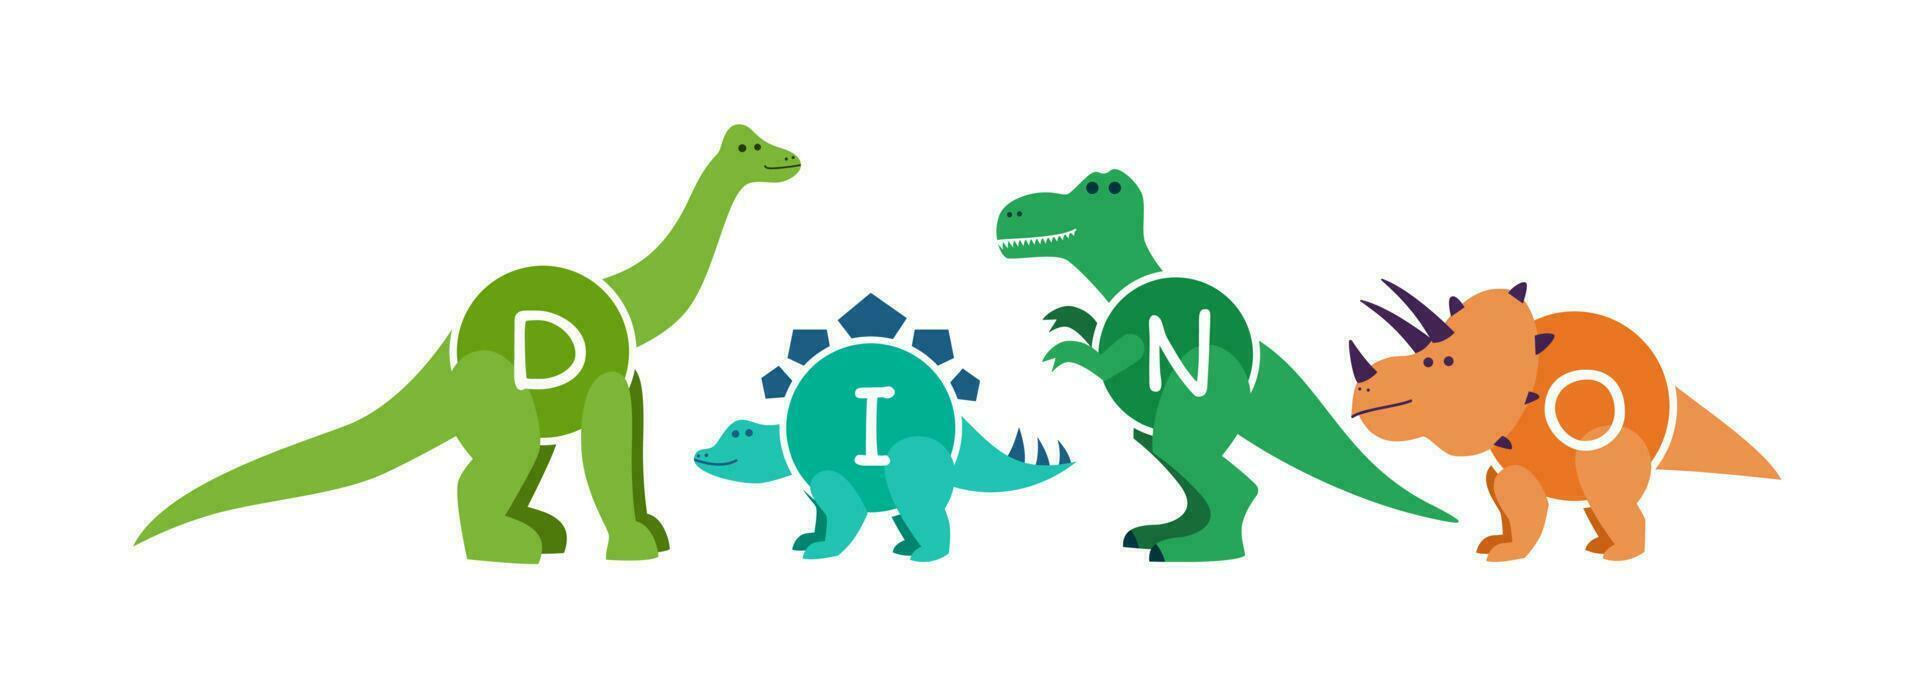 conjunto do desenho animado dinossauros personagens - t rex etc vetor